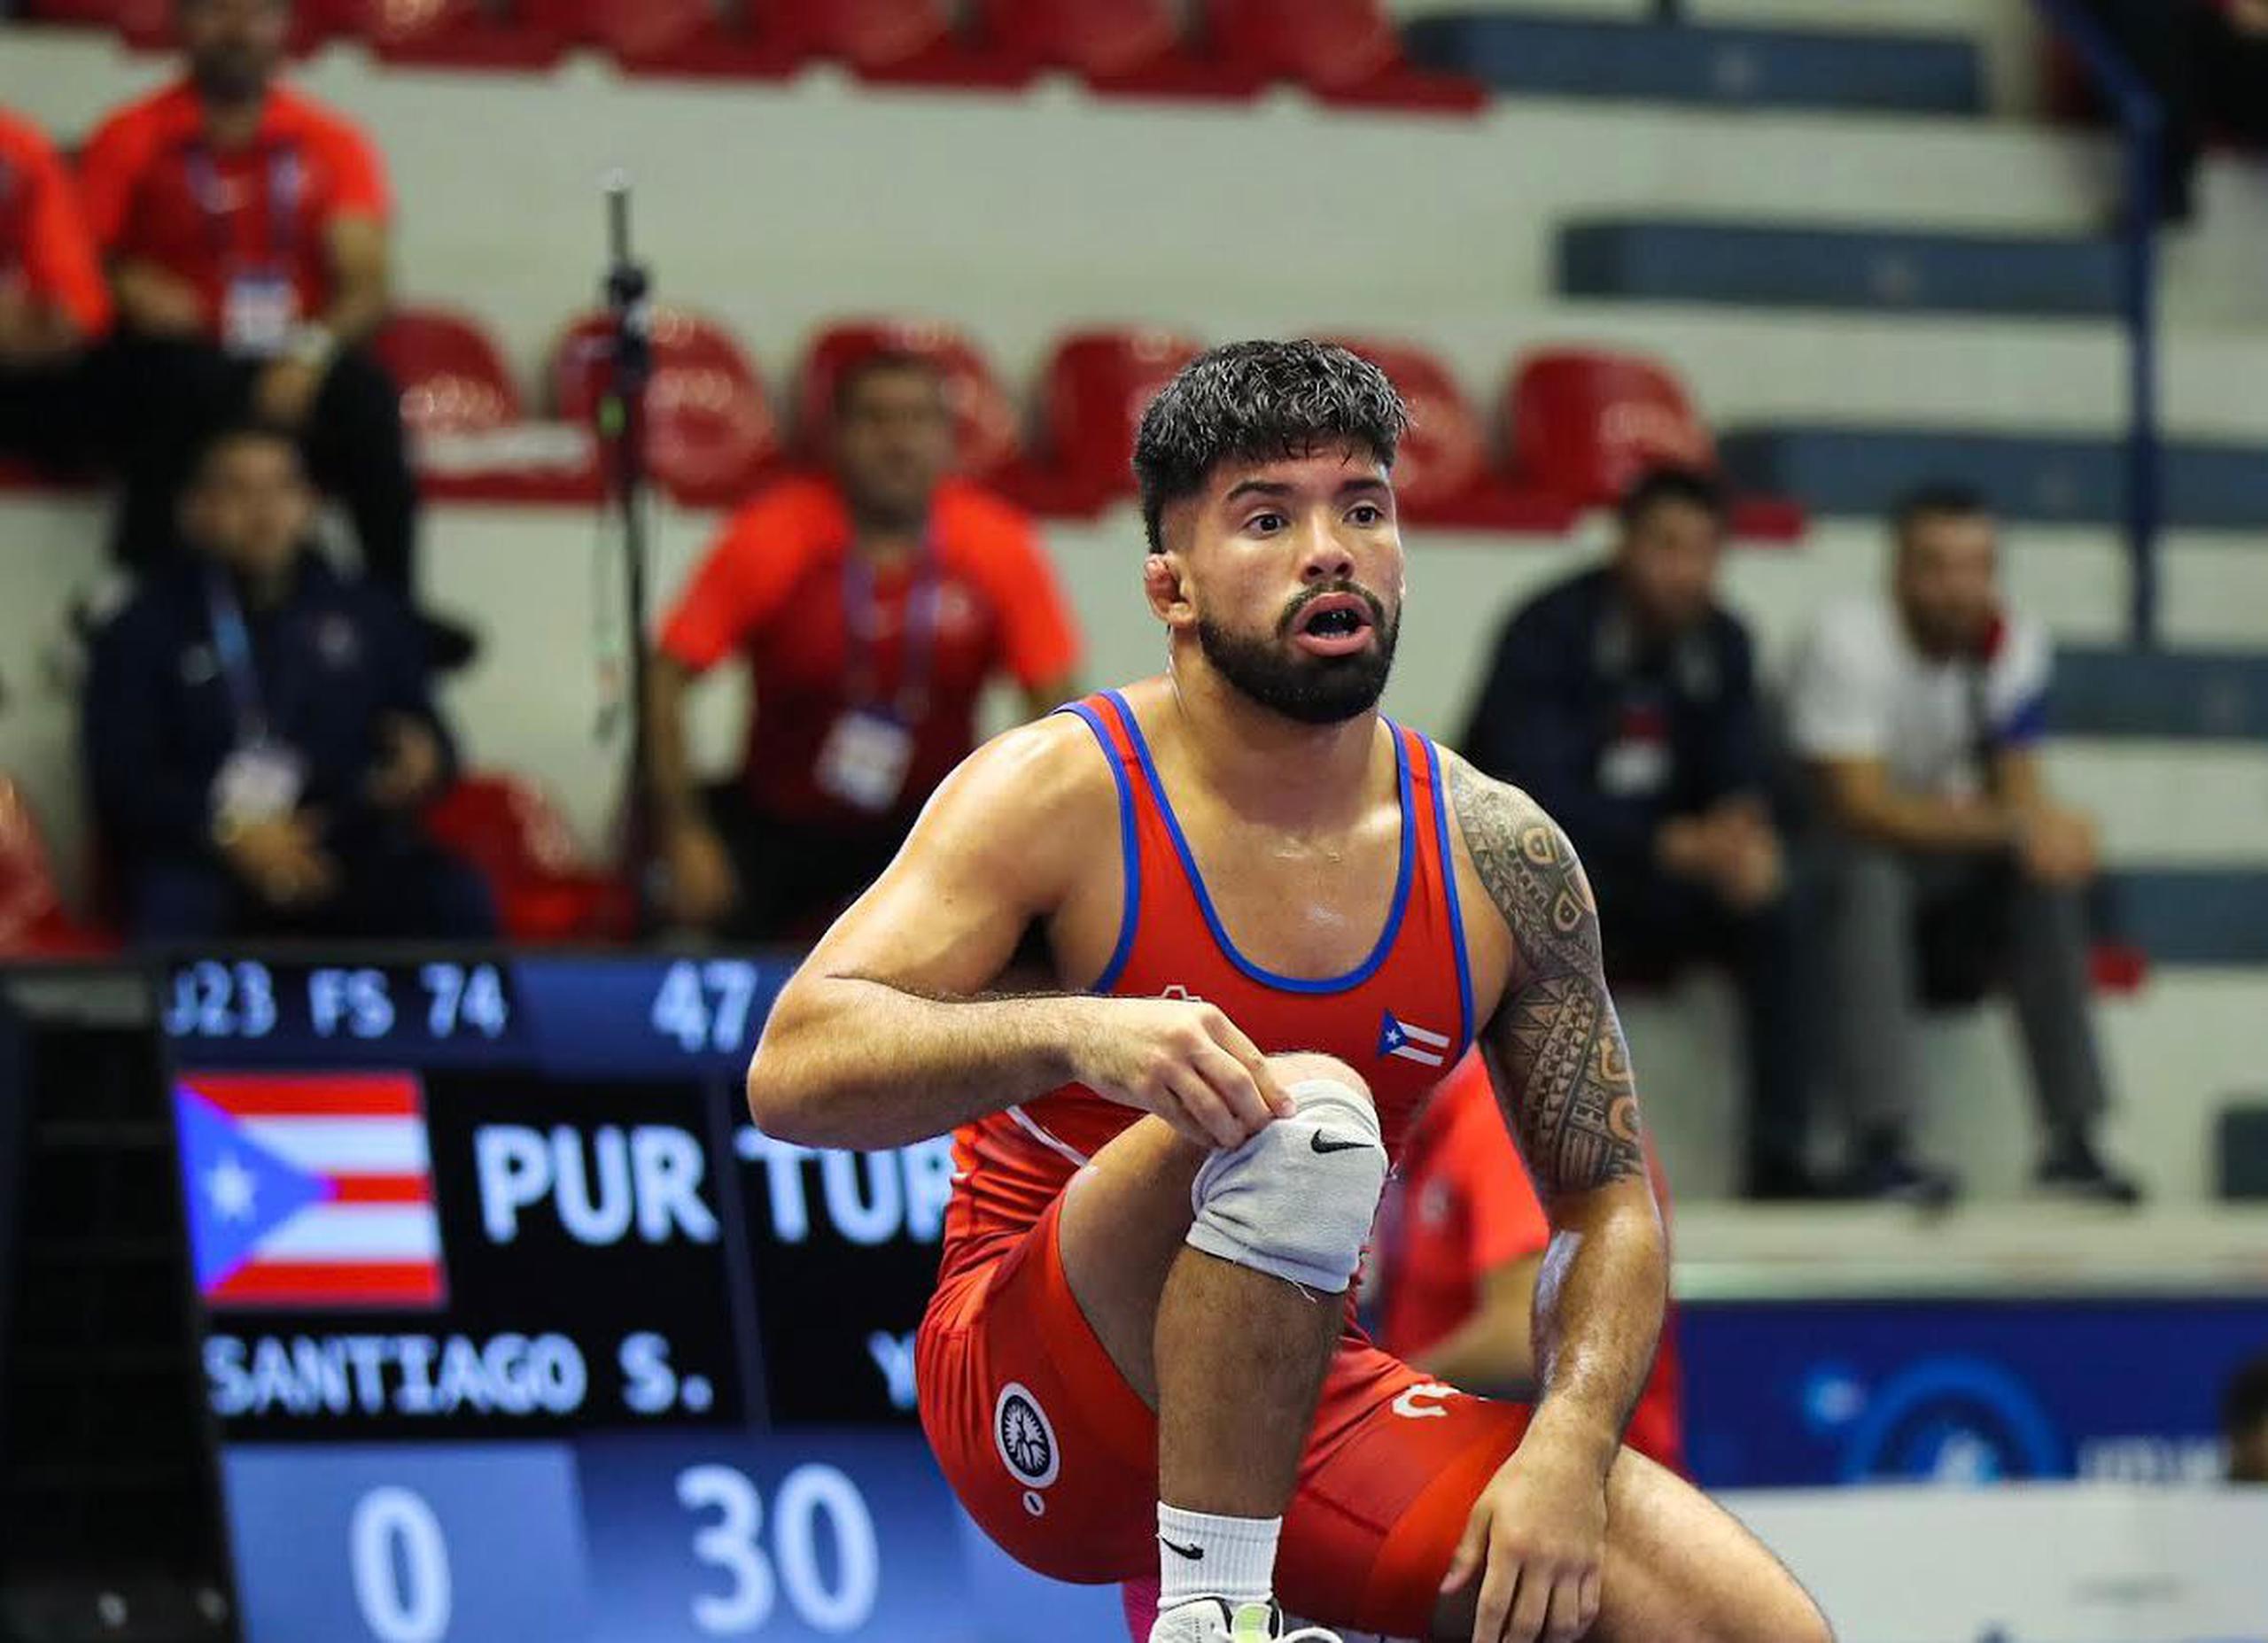 El luchador de Puerto Rico, Sonny Santiago, pasó una eliminatoria en Puerto Rico en la división de -74 kilogramos para ganarse el derecho a competir en el preolímpico mundial de mayo en Turquía.